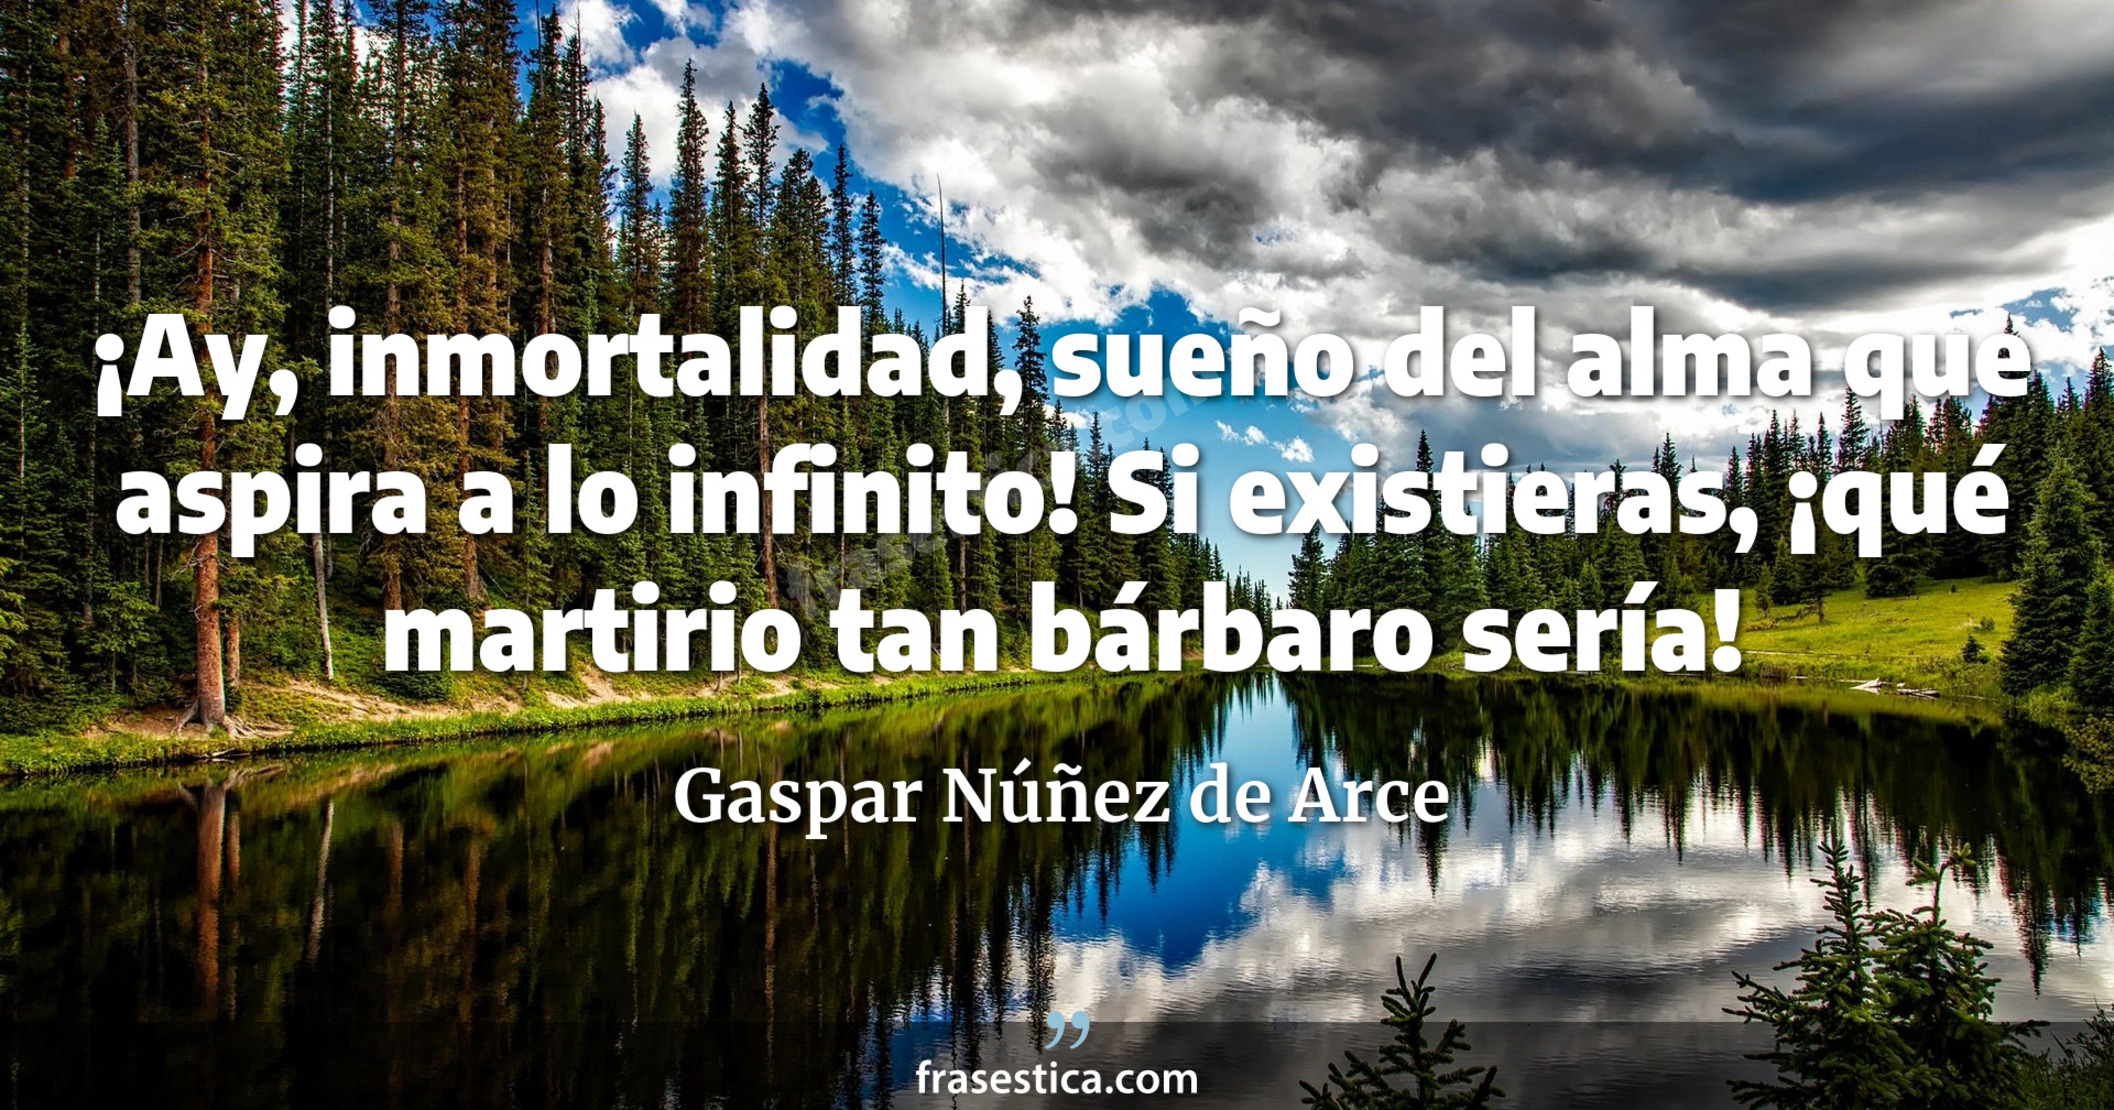 ¡Ay, inmortalidad, sueño del alma que aspira a lo infinito! Si existieras, ¡qué martirio tan bárbaro sería! - Gaspar Núñez de Arce